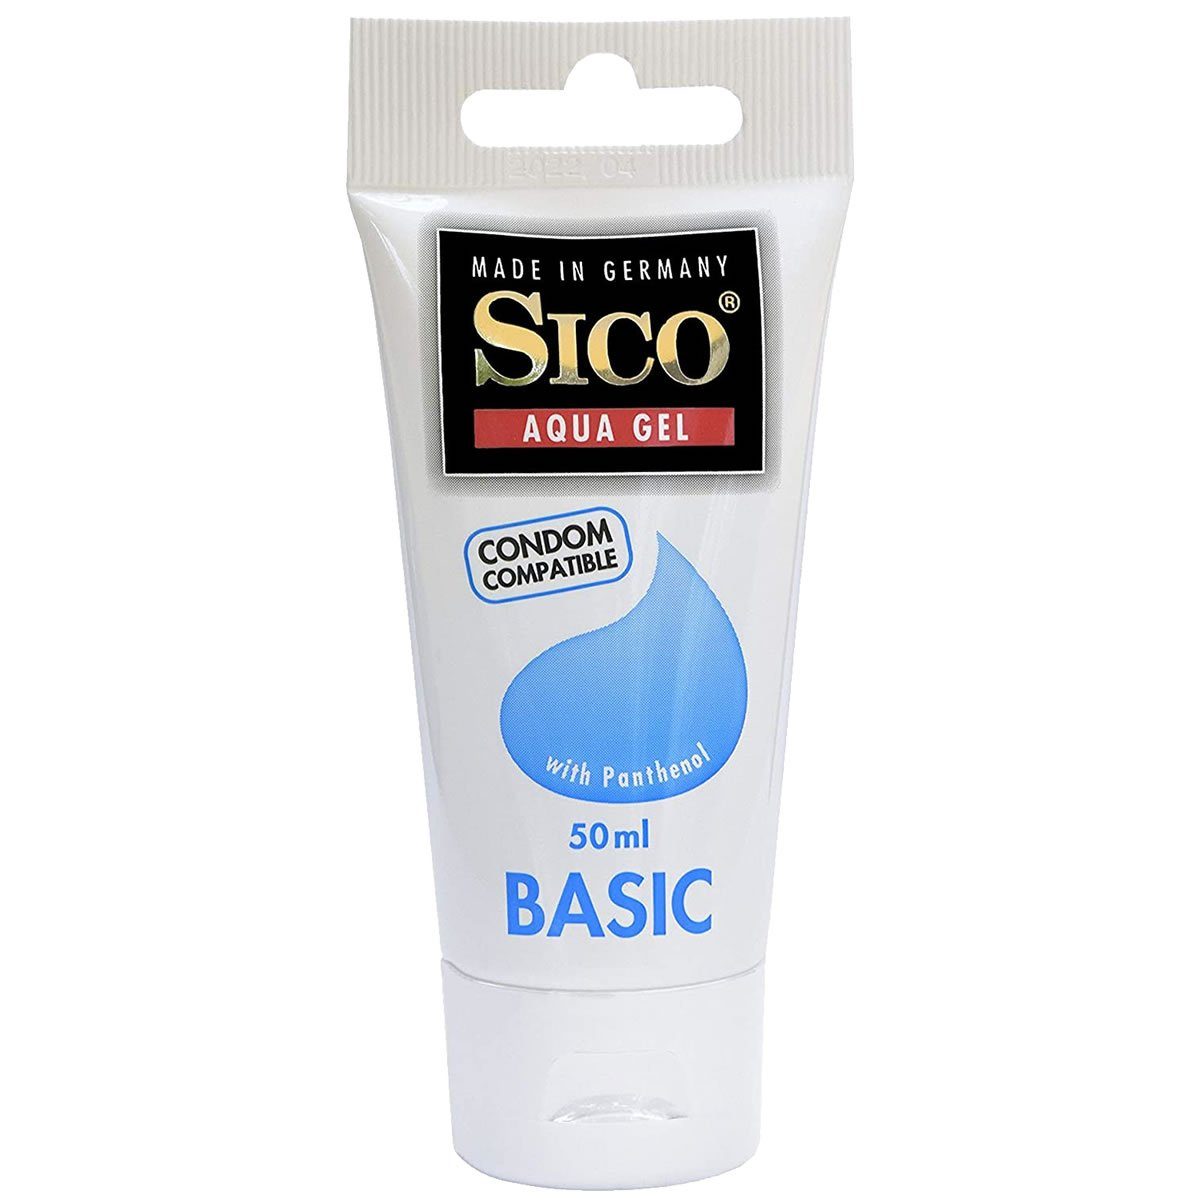 SICO Gleitgel Aqua-Gel Basic - mit Panthenol, Tube mit 50ml, hautfreundliches Gleitgel